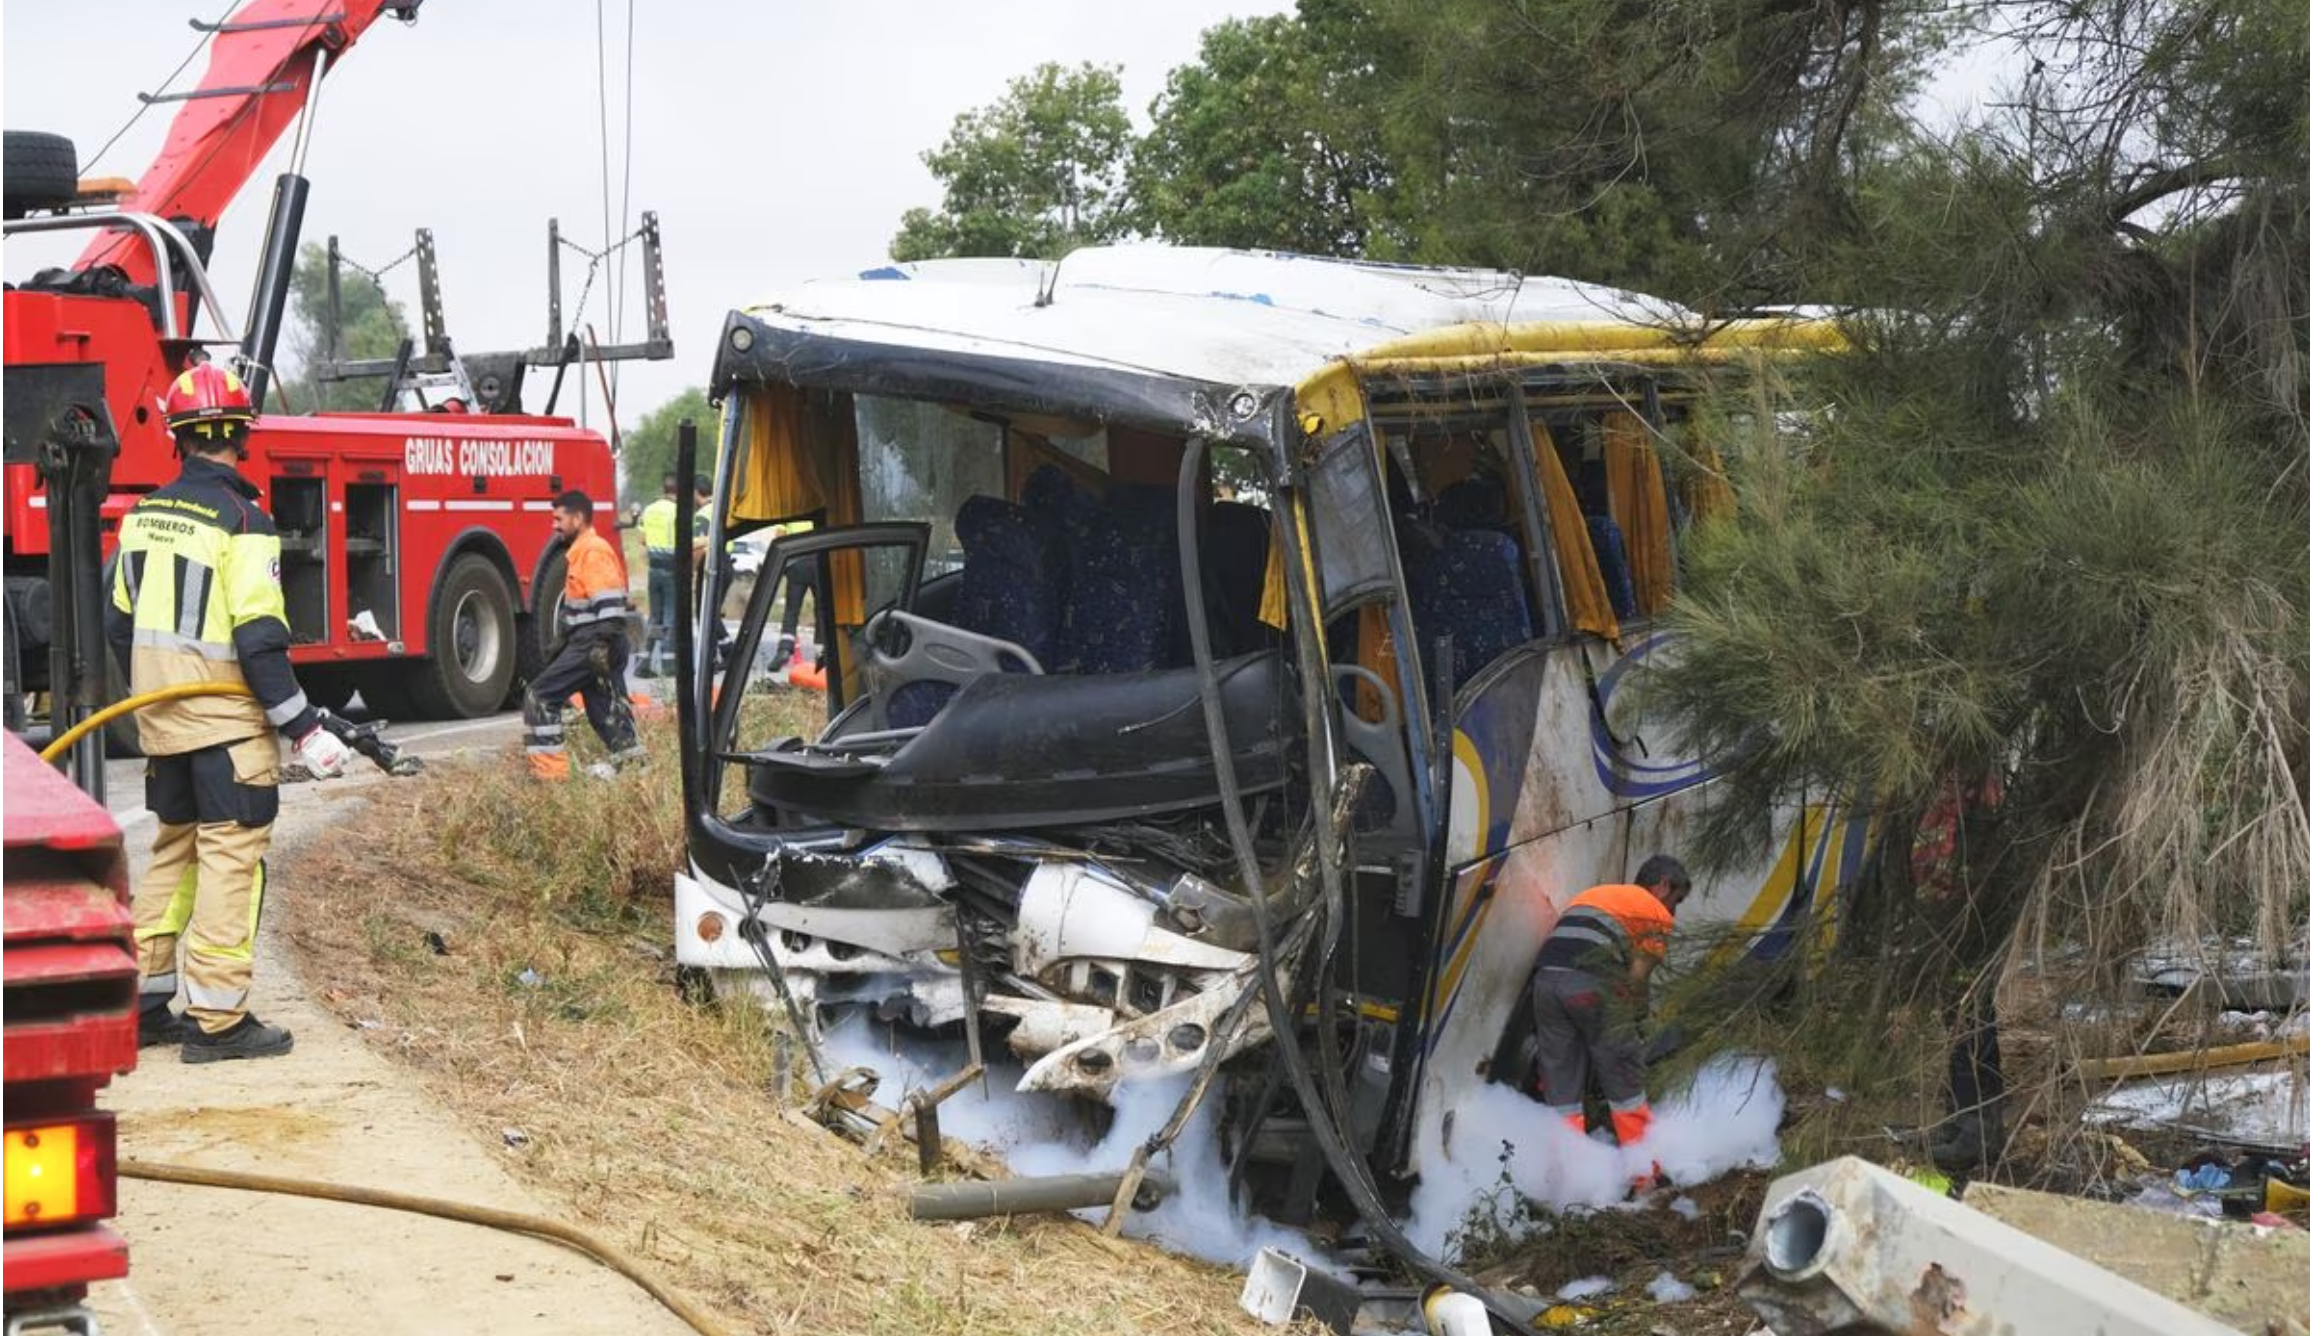 Moroccan seasonal worker dies, 25 injured in bus accident in Spain